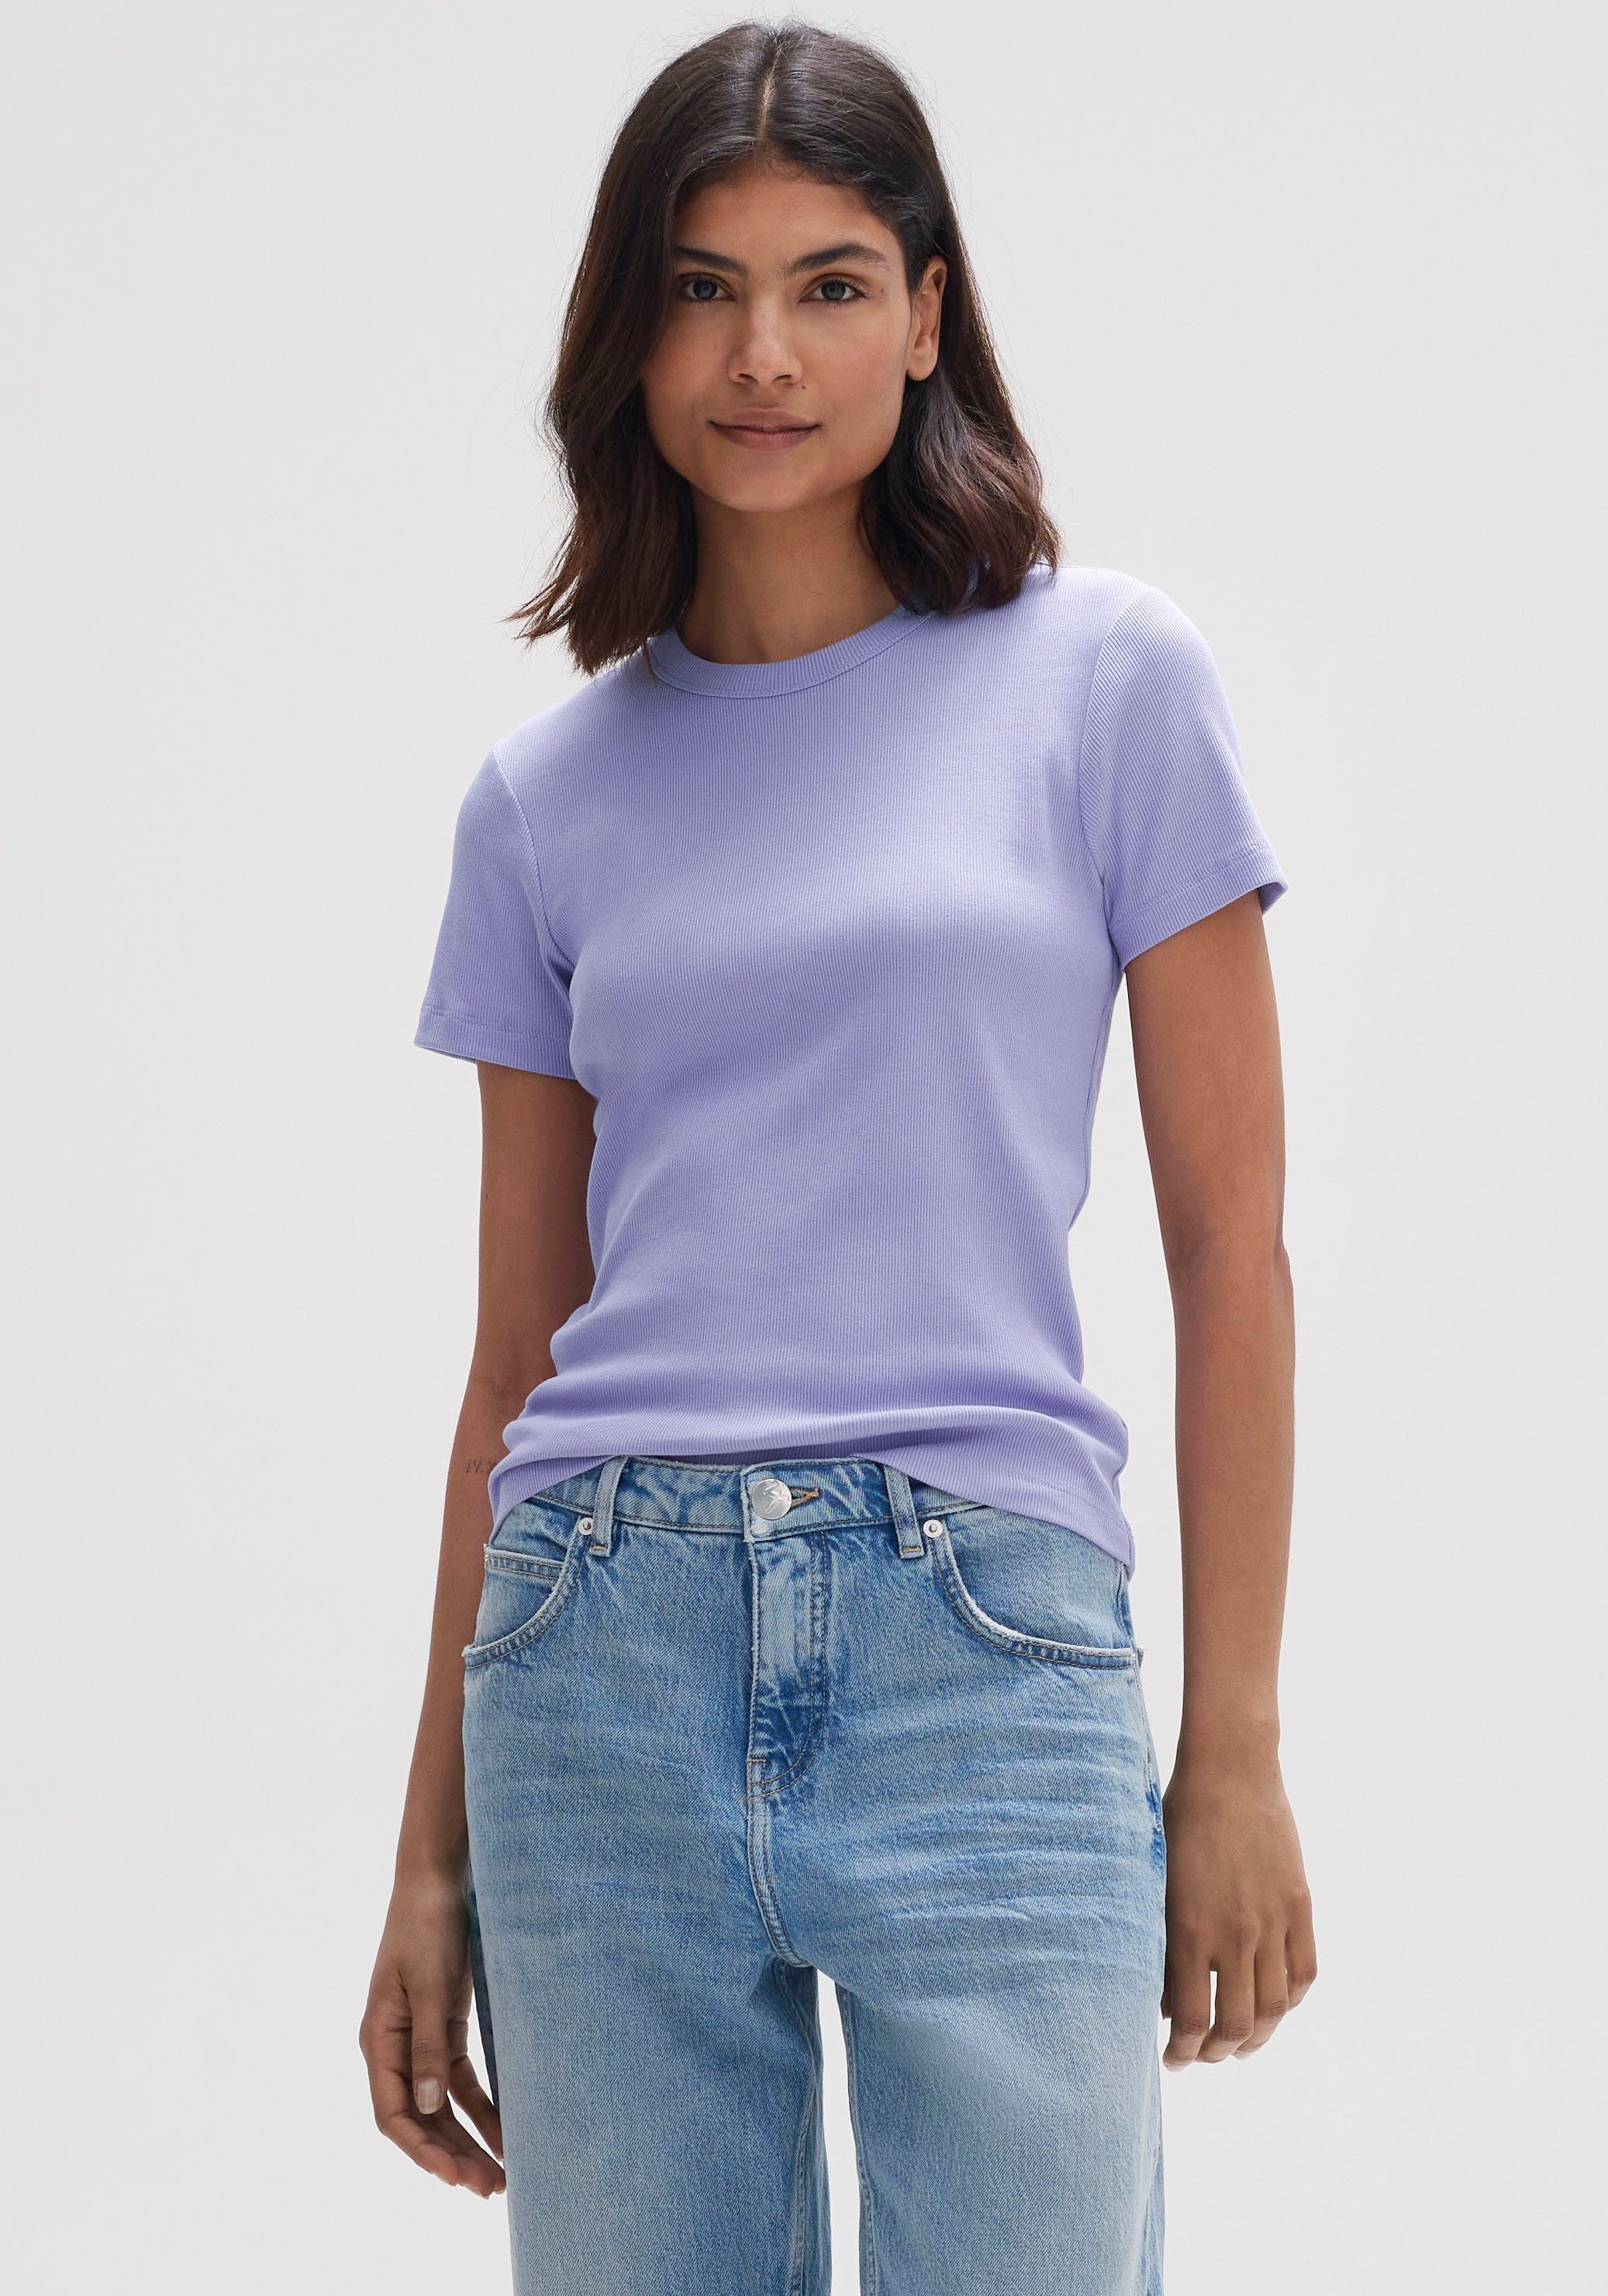 OPUS T-Shirt Samuna in feiner viola soft Rippqualität